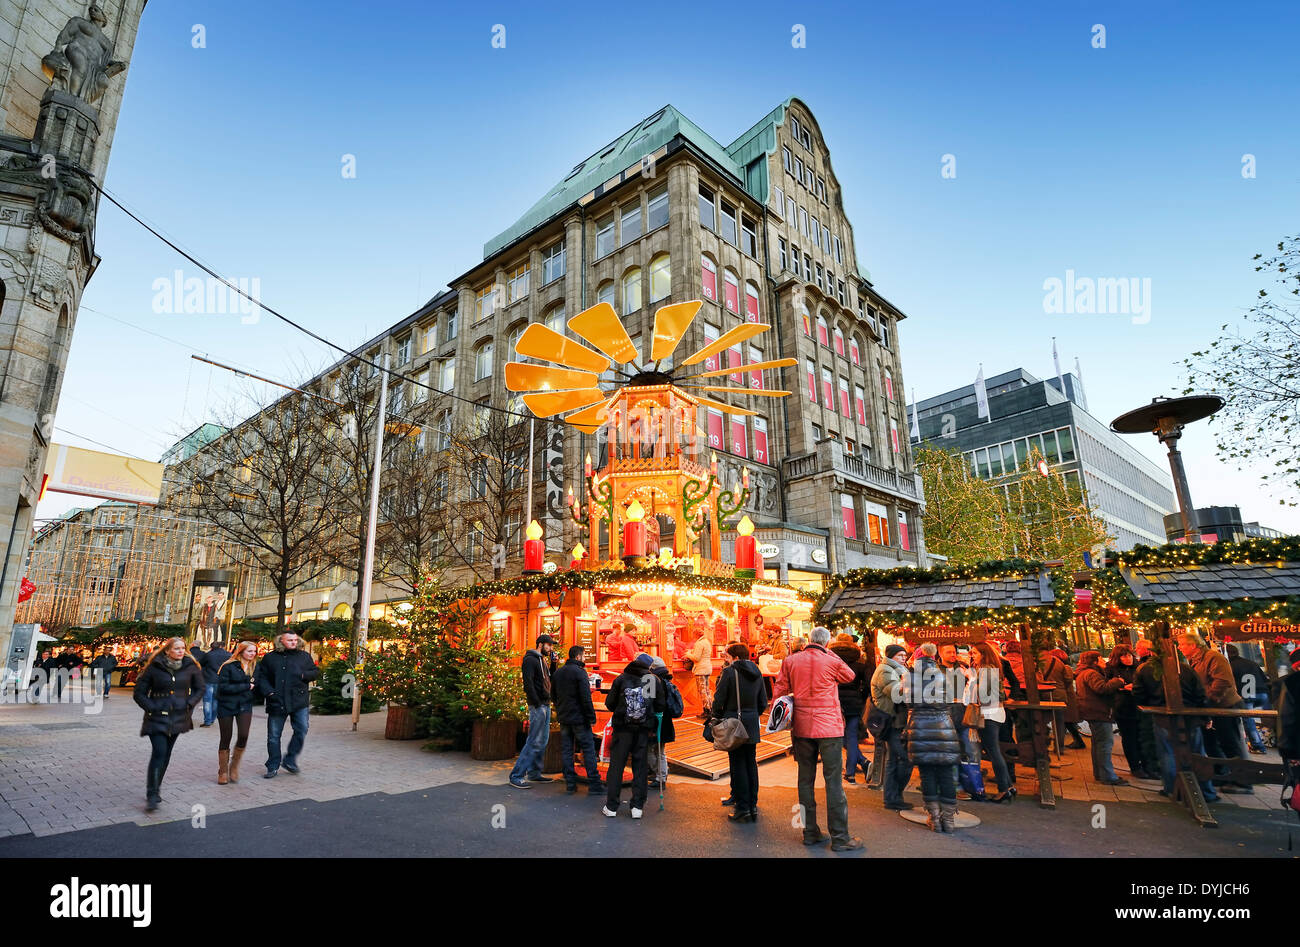 Weihnachtsmarkt in der Spitalerstraße in Hamburg, Deutschland, Europa Stock Photo